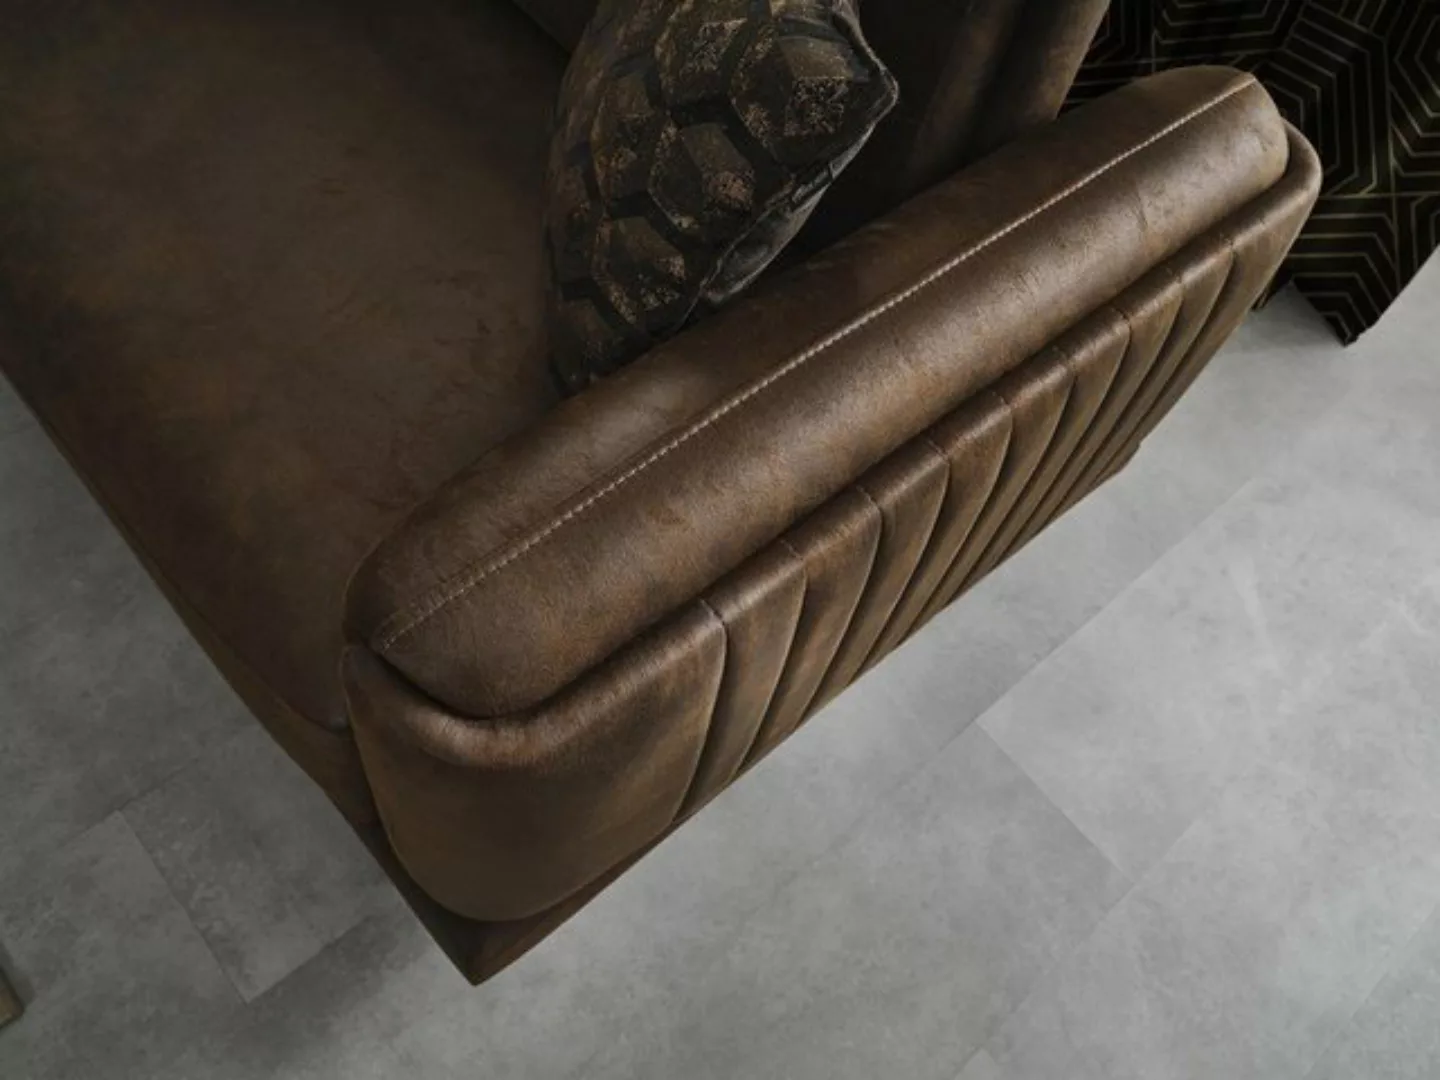 JVmoebel 3-Sitzer Wohnzimmer Sofa 3 Sitzer Luxus Couchen Polster Möbel Neu günstig online kaufen